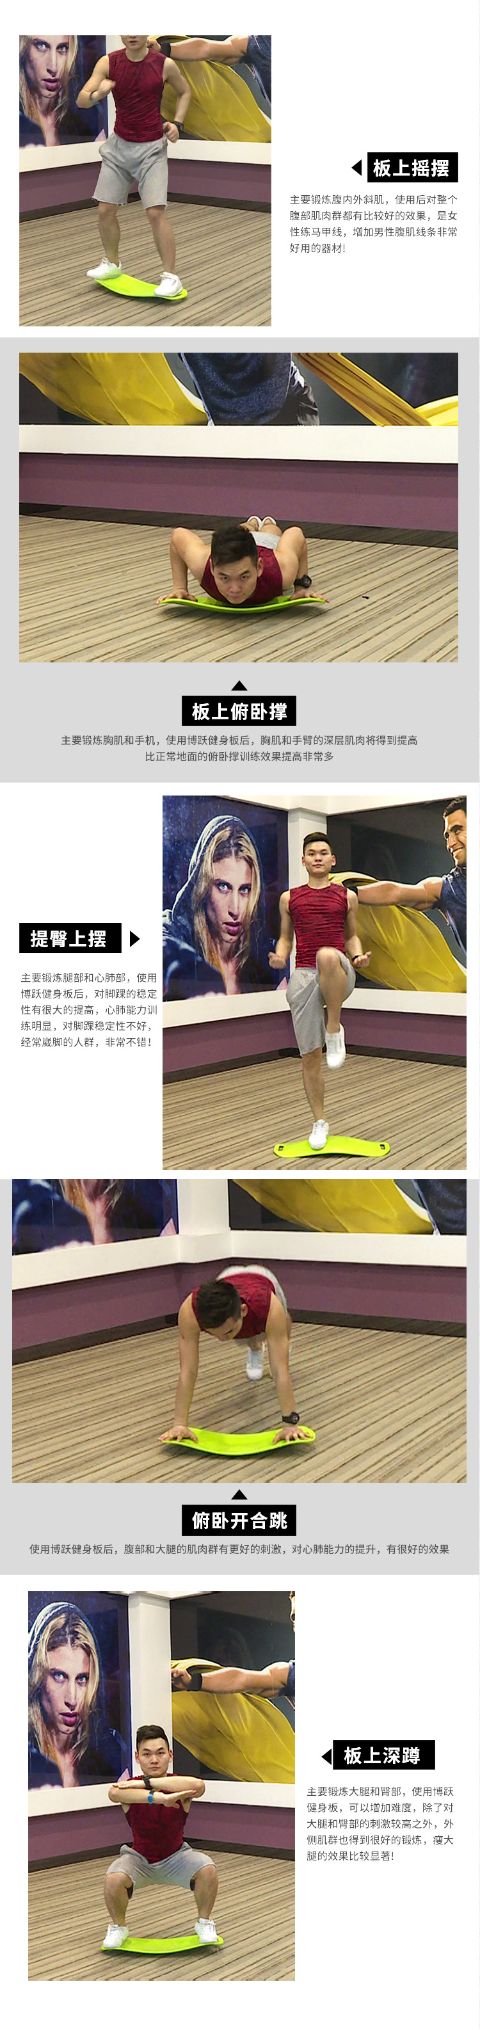  厂家直销平衡板滑板瑜伽辅助器材健身器材健身瑜伽板可定制详情7